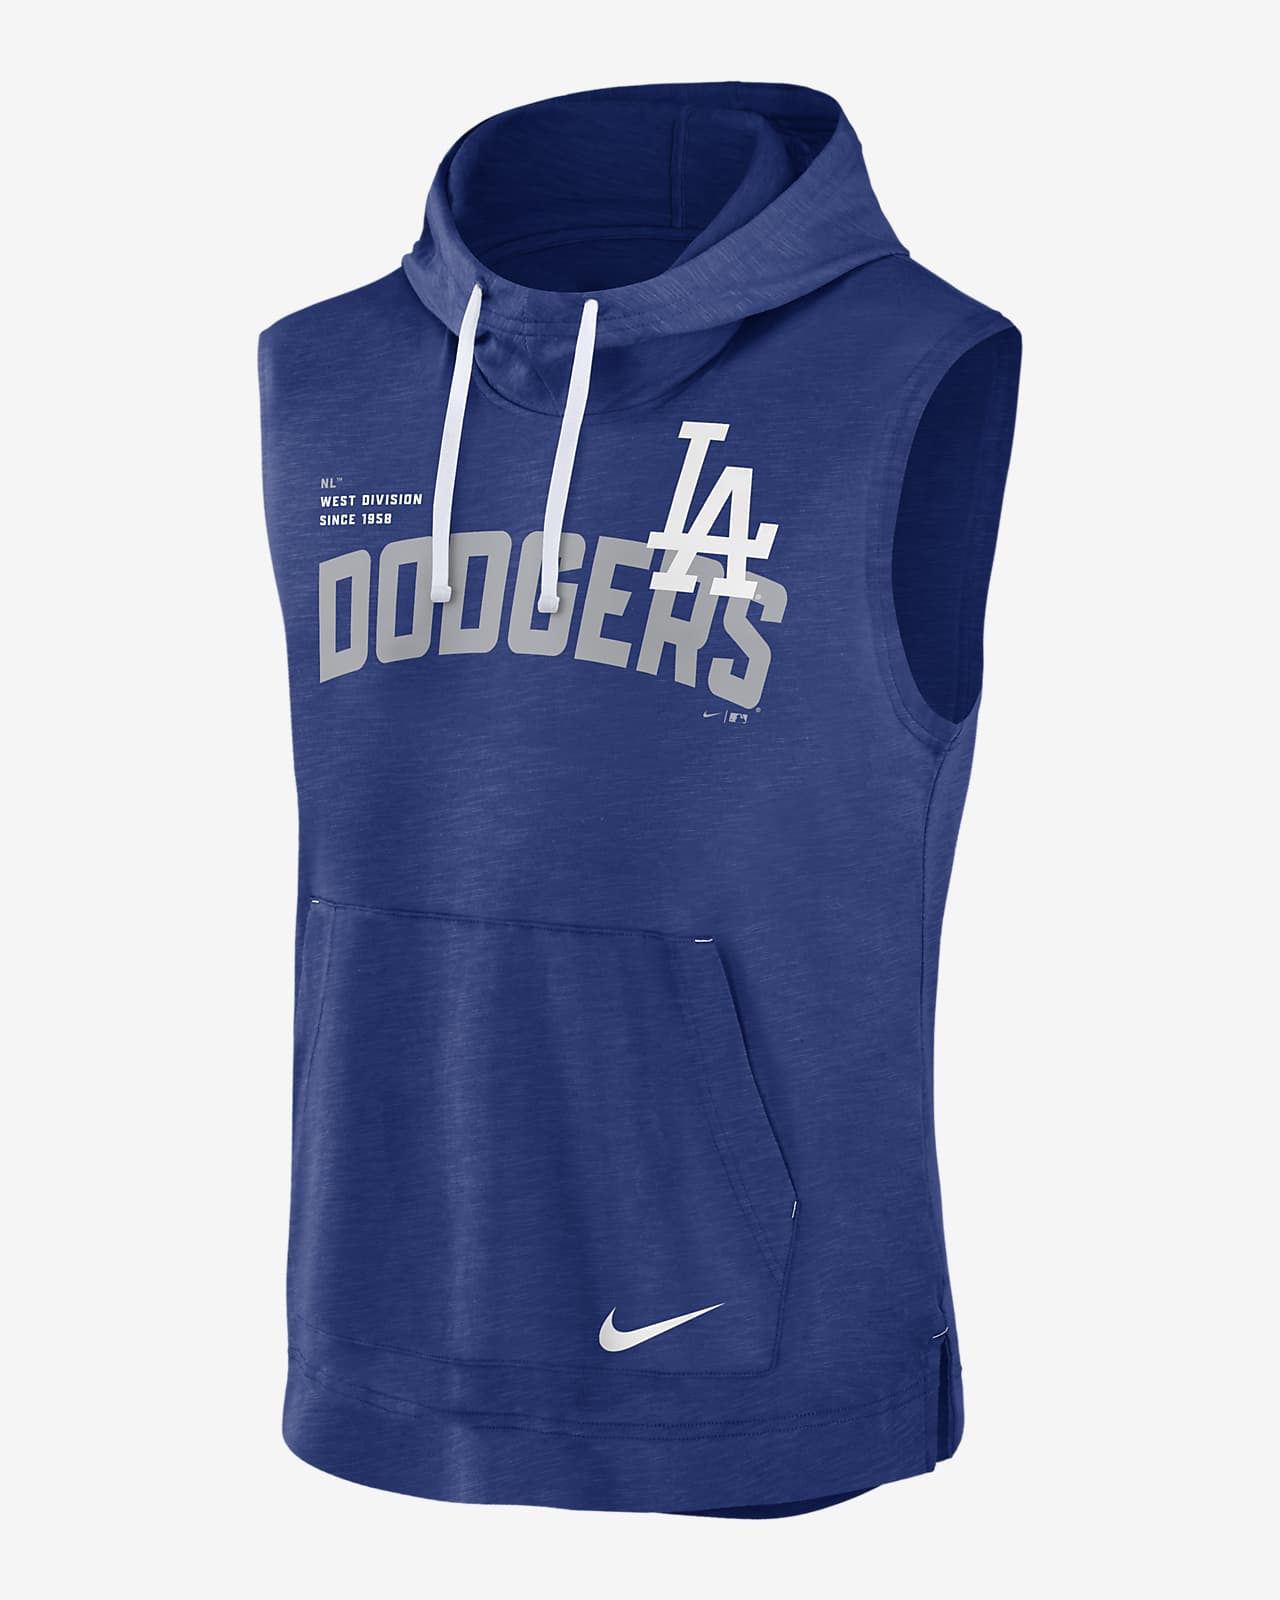 Nike Dodgers 1958